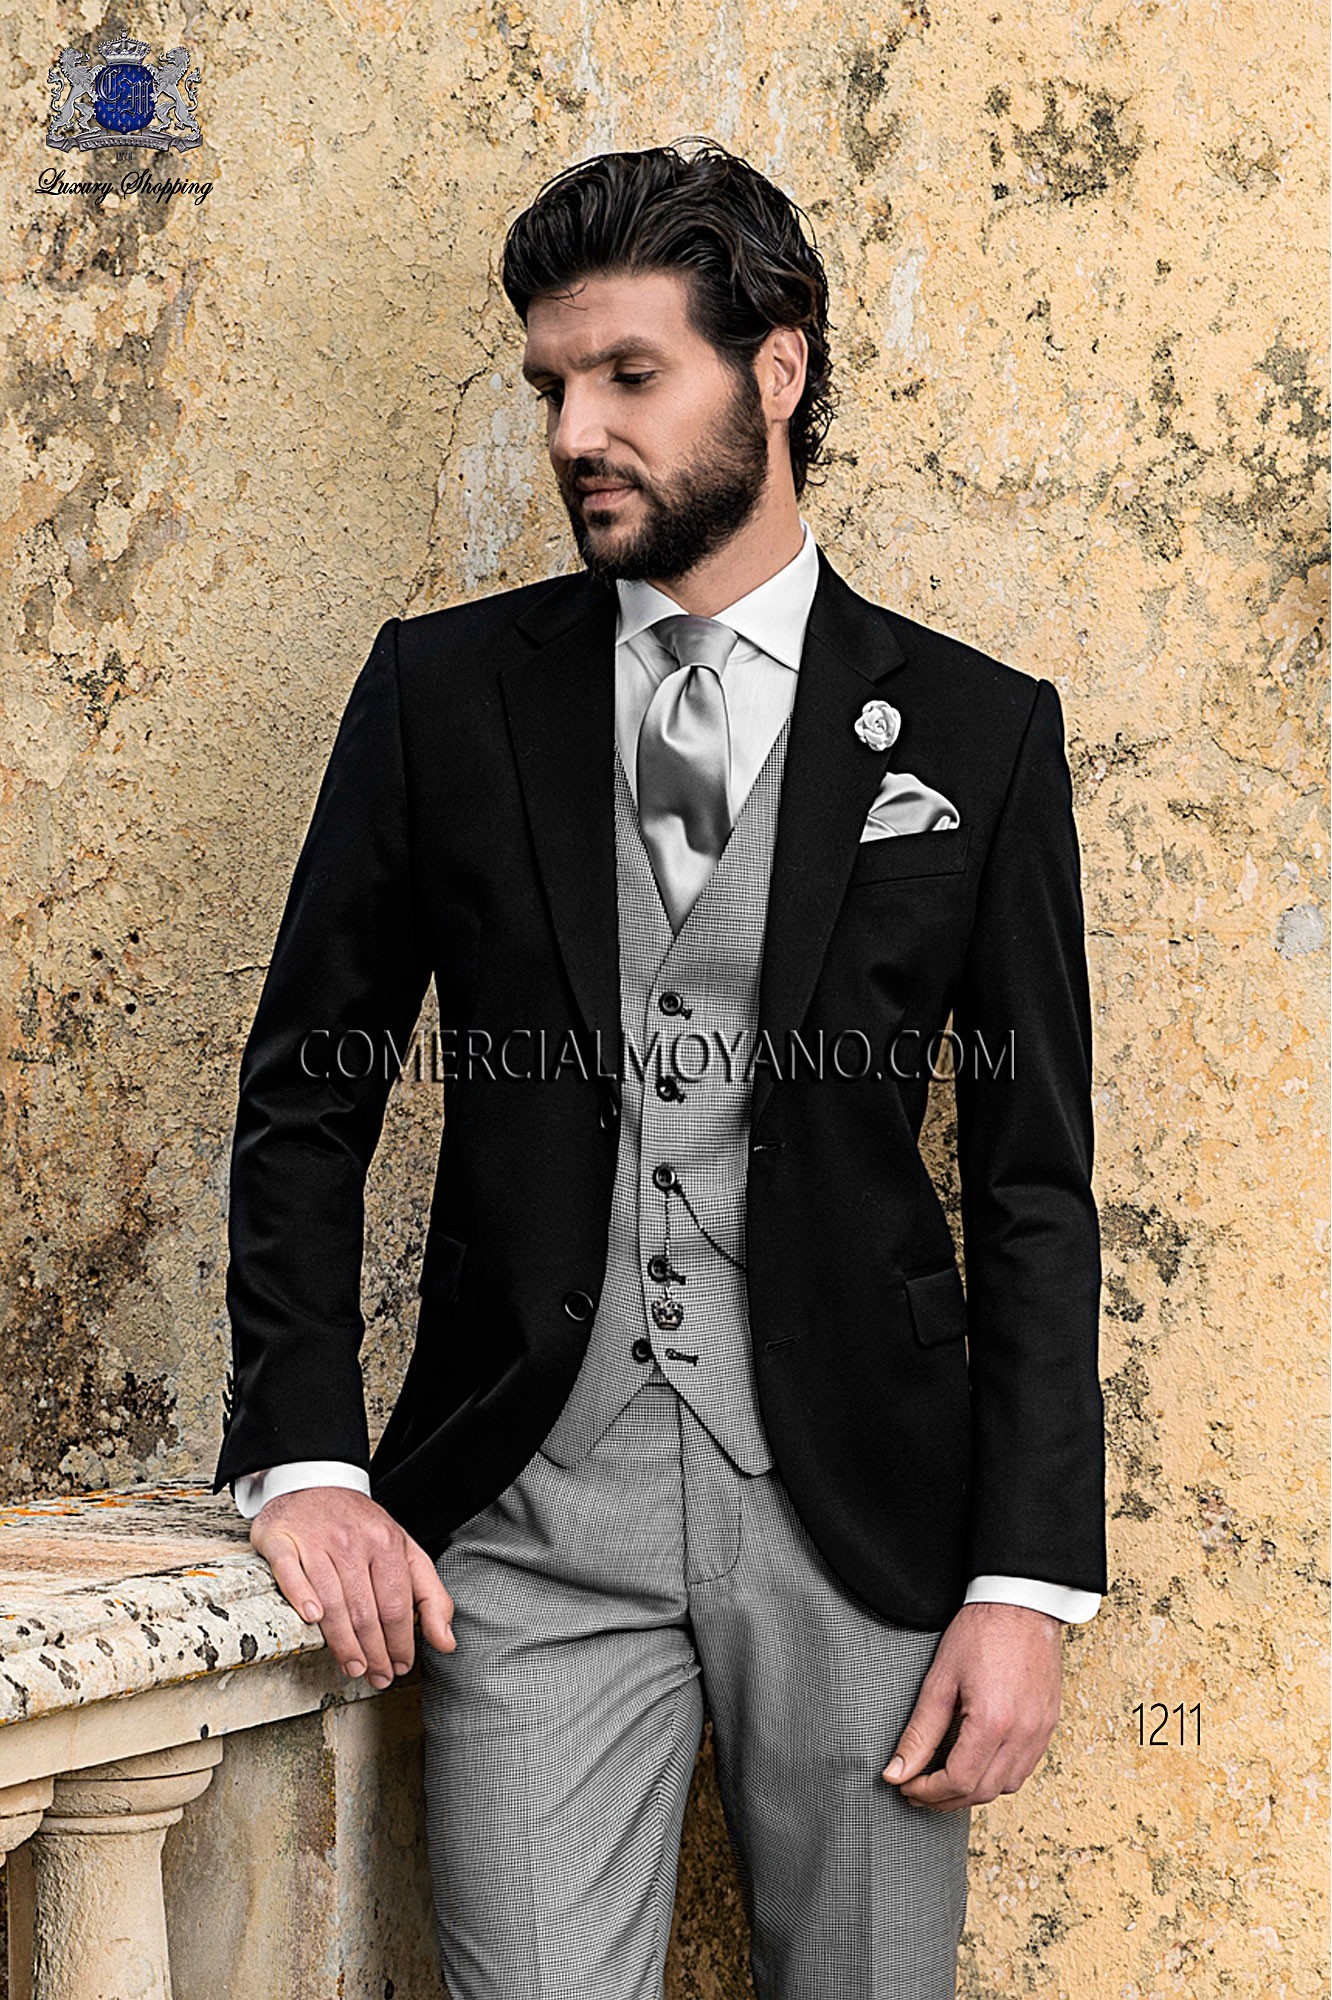 Traje Gentleman de novio negro modelo: 1211 Mario Moyano colección Gentleman